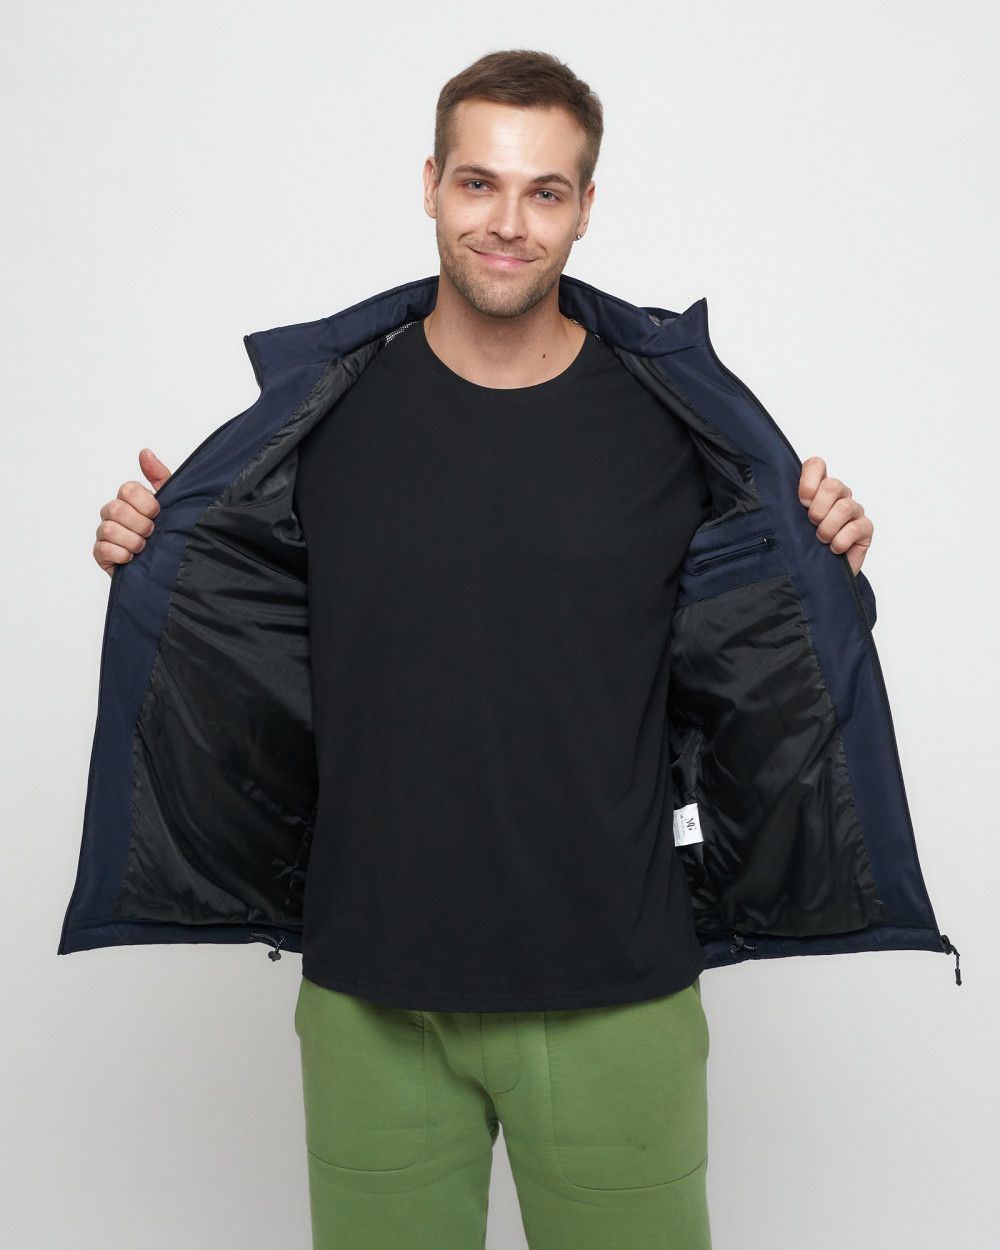 Купить куртку мужскую спортивную весеннюю оптом от производителя недорого в Москве 8816TS 1